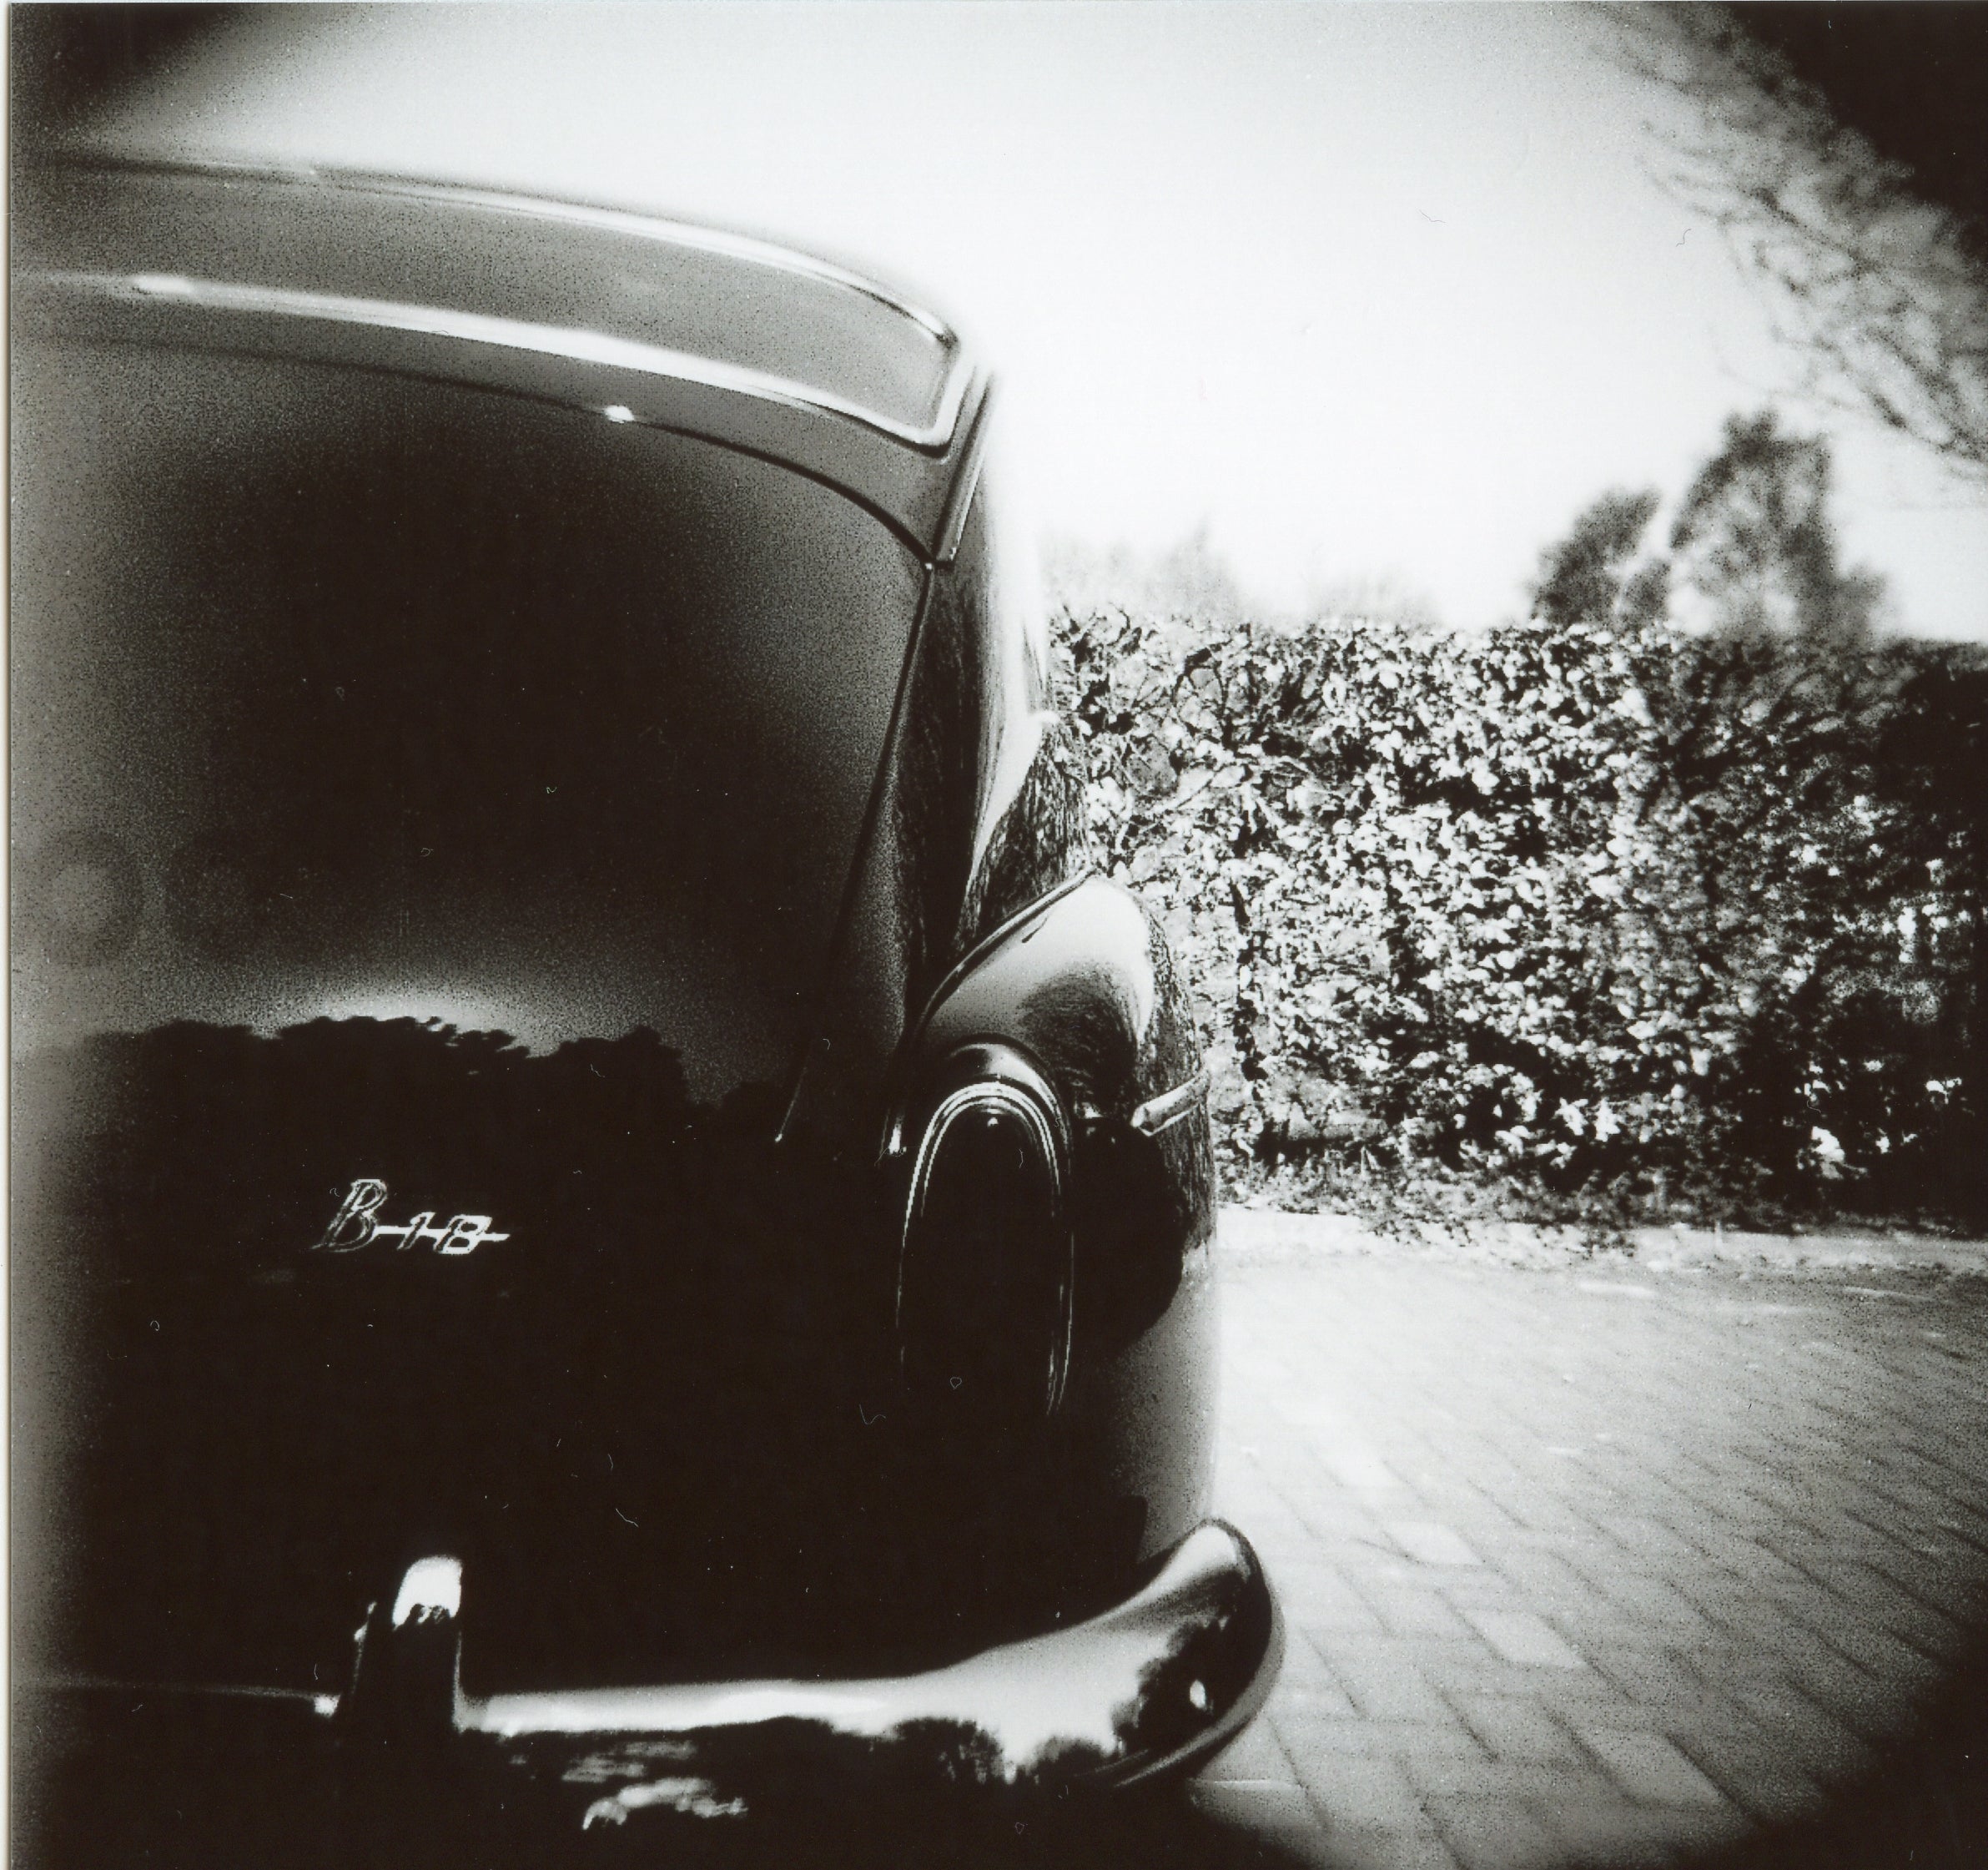 Photo of car on adox chs II 120 b&w film